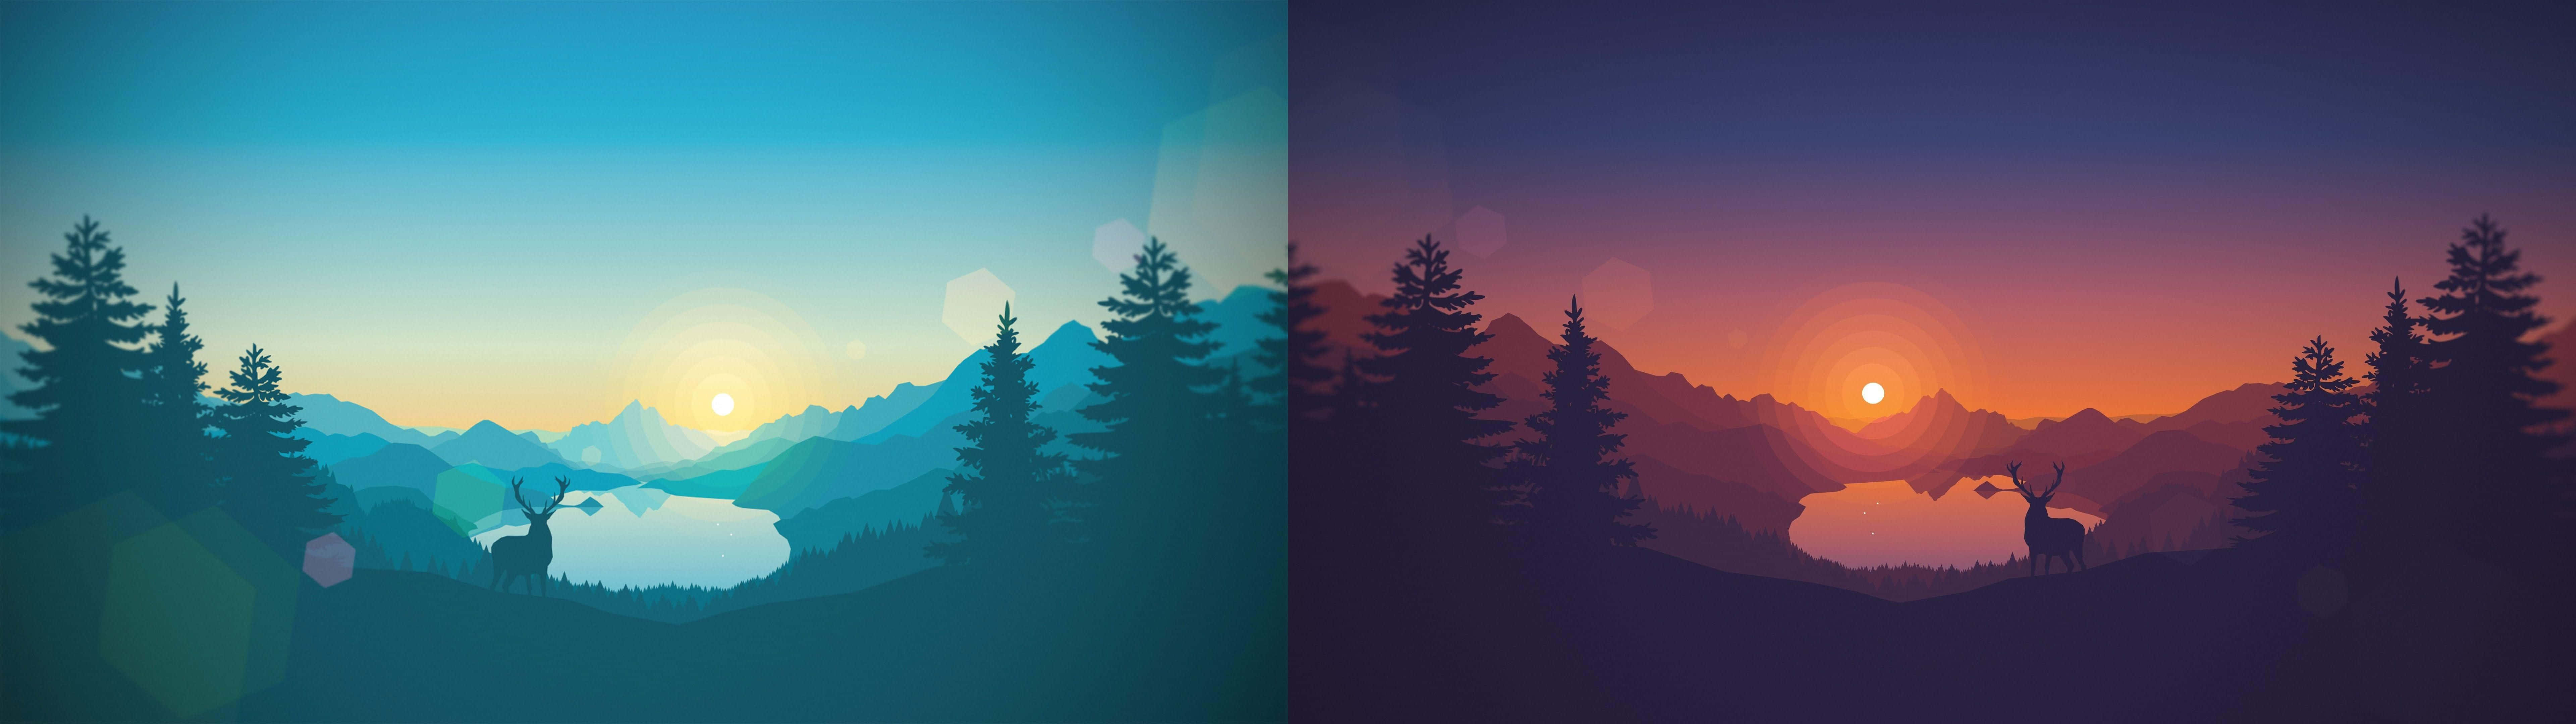 Duasimagens Diferentes De Um Pôr Do Sol Com Árvores E Montanhas Papel de Parede